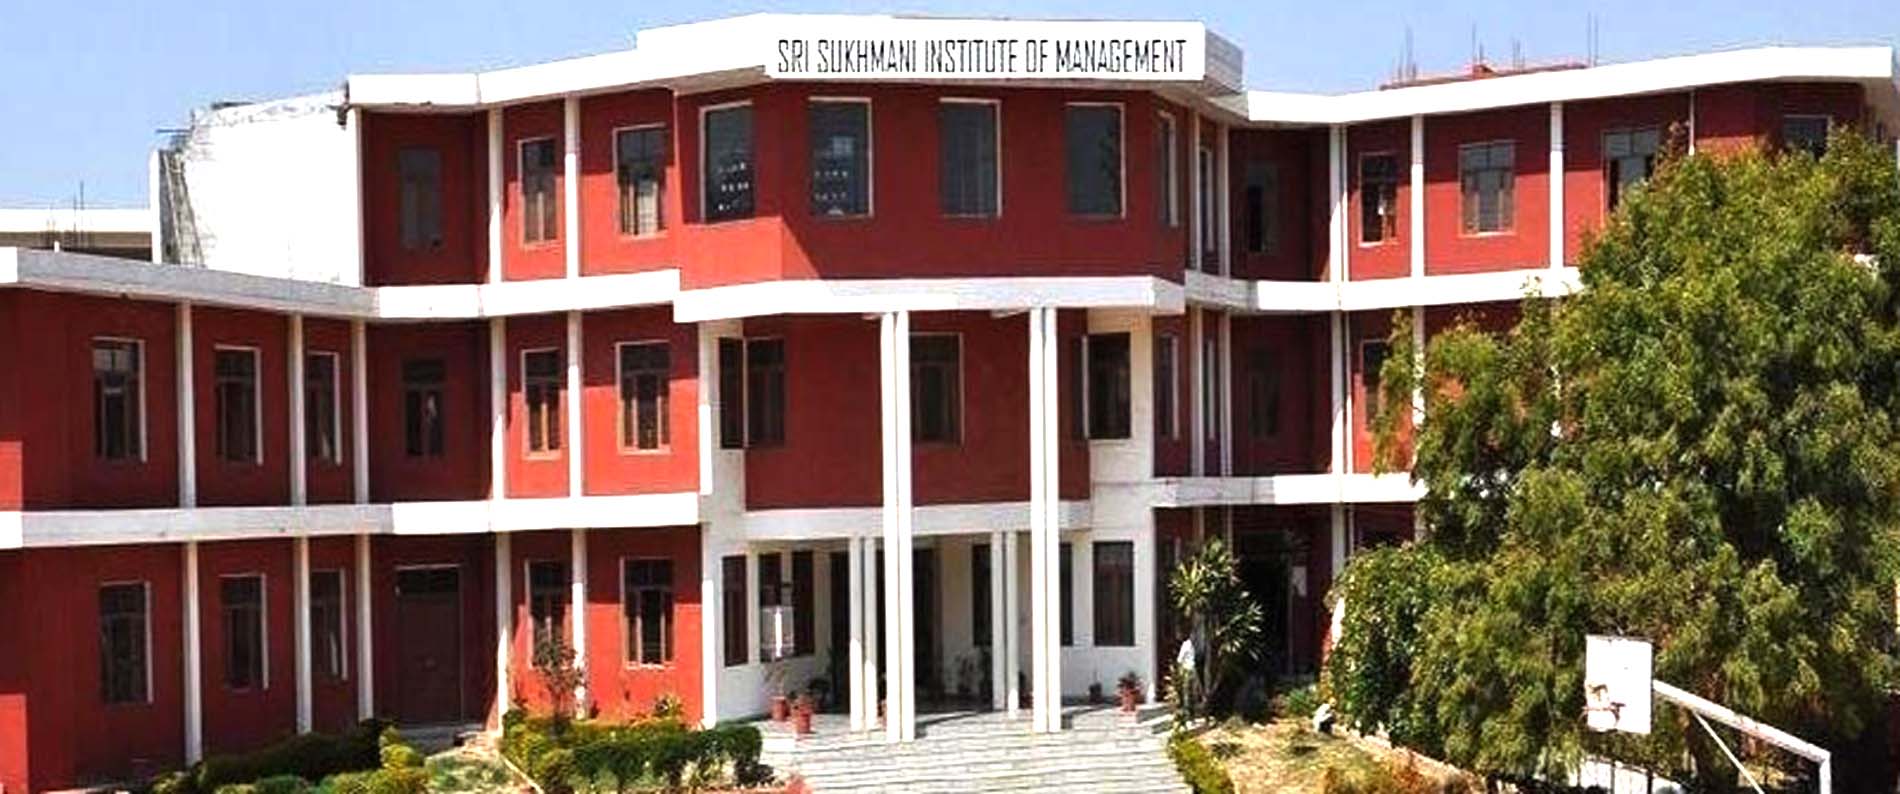 Sri Sukhmani Institute of Management (SSIM), New Delhi